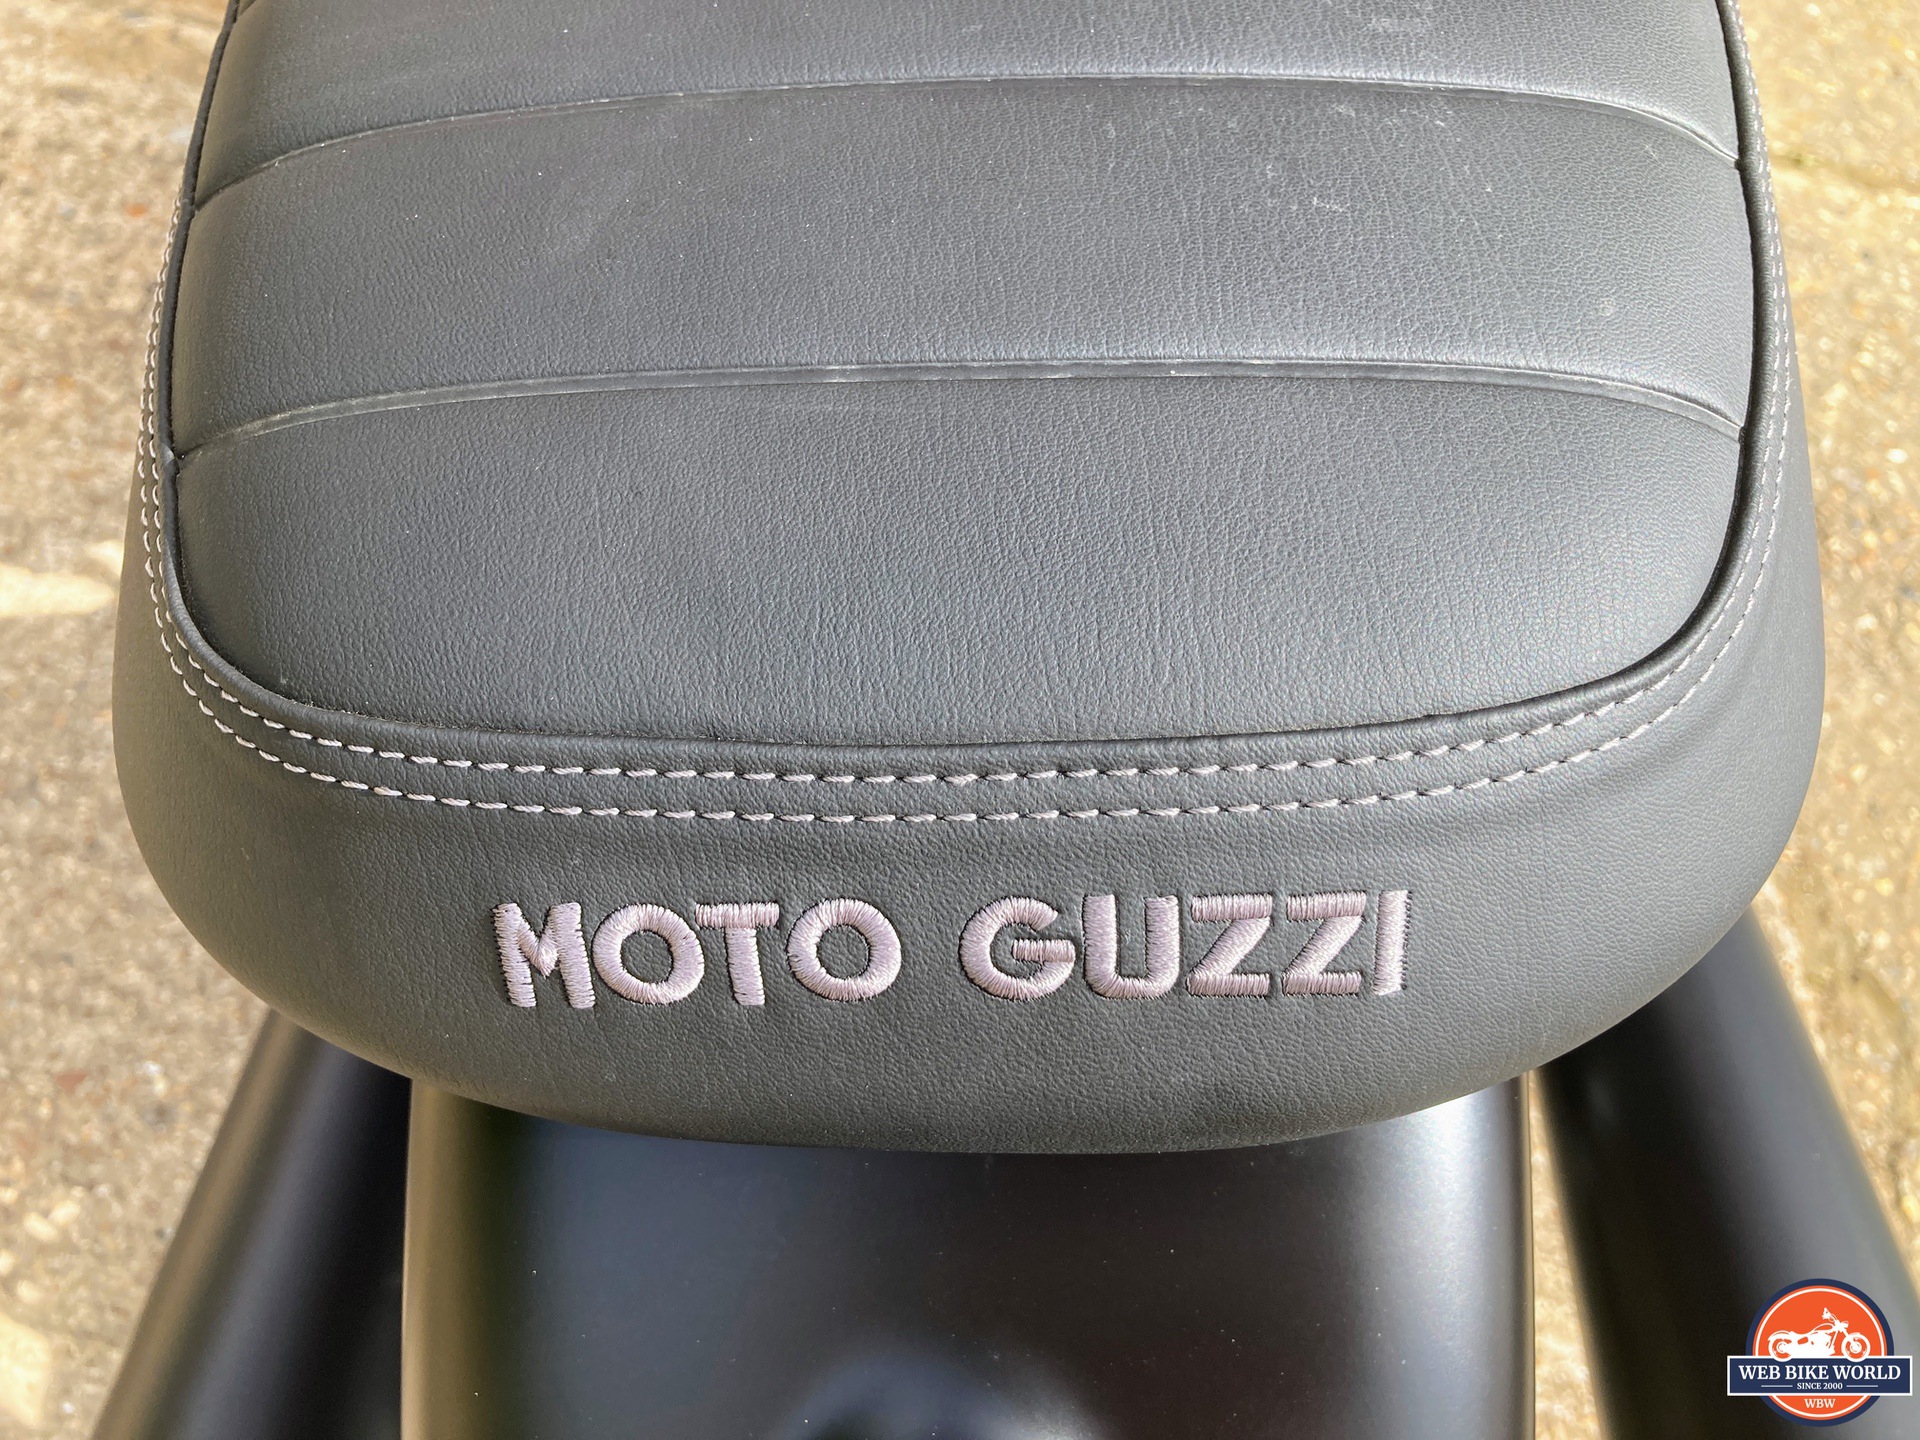 Stock seat on 2022 Moto Guzzi V7 Stone